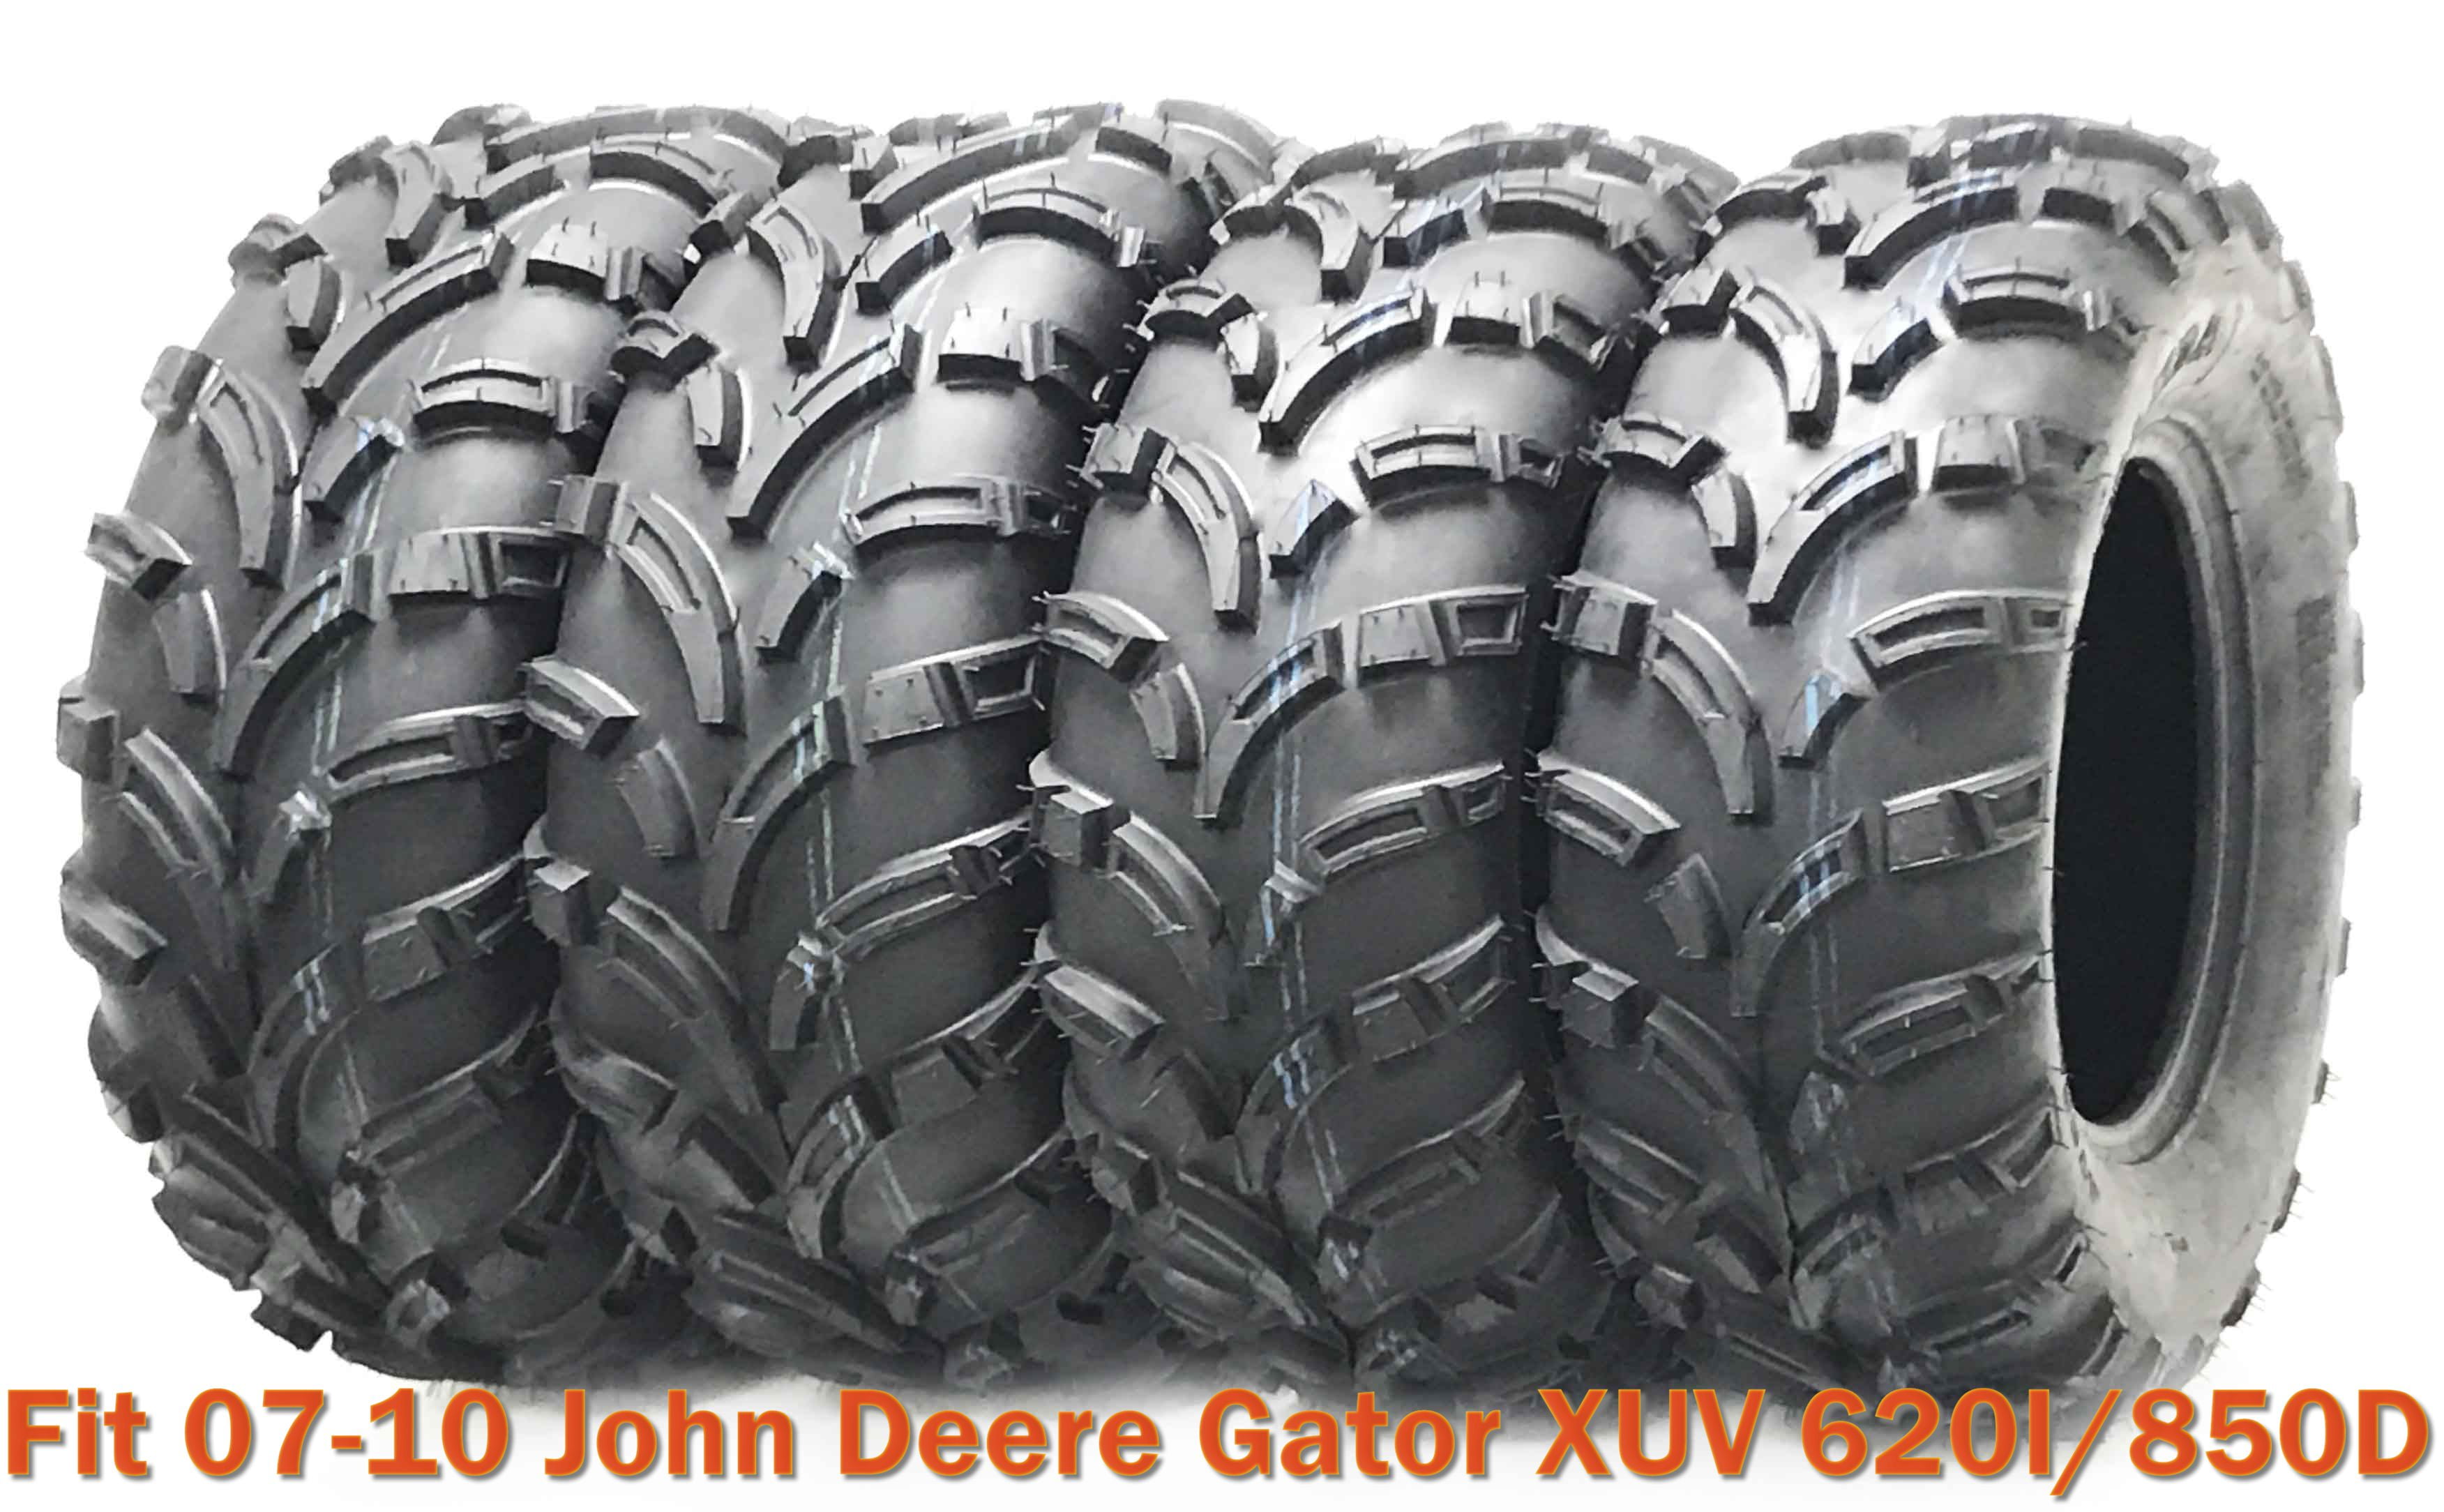 2007-2008 John Deere Gator XUV 620i Legacy Front ATV Tire 27-9-12 